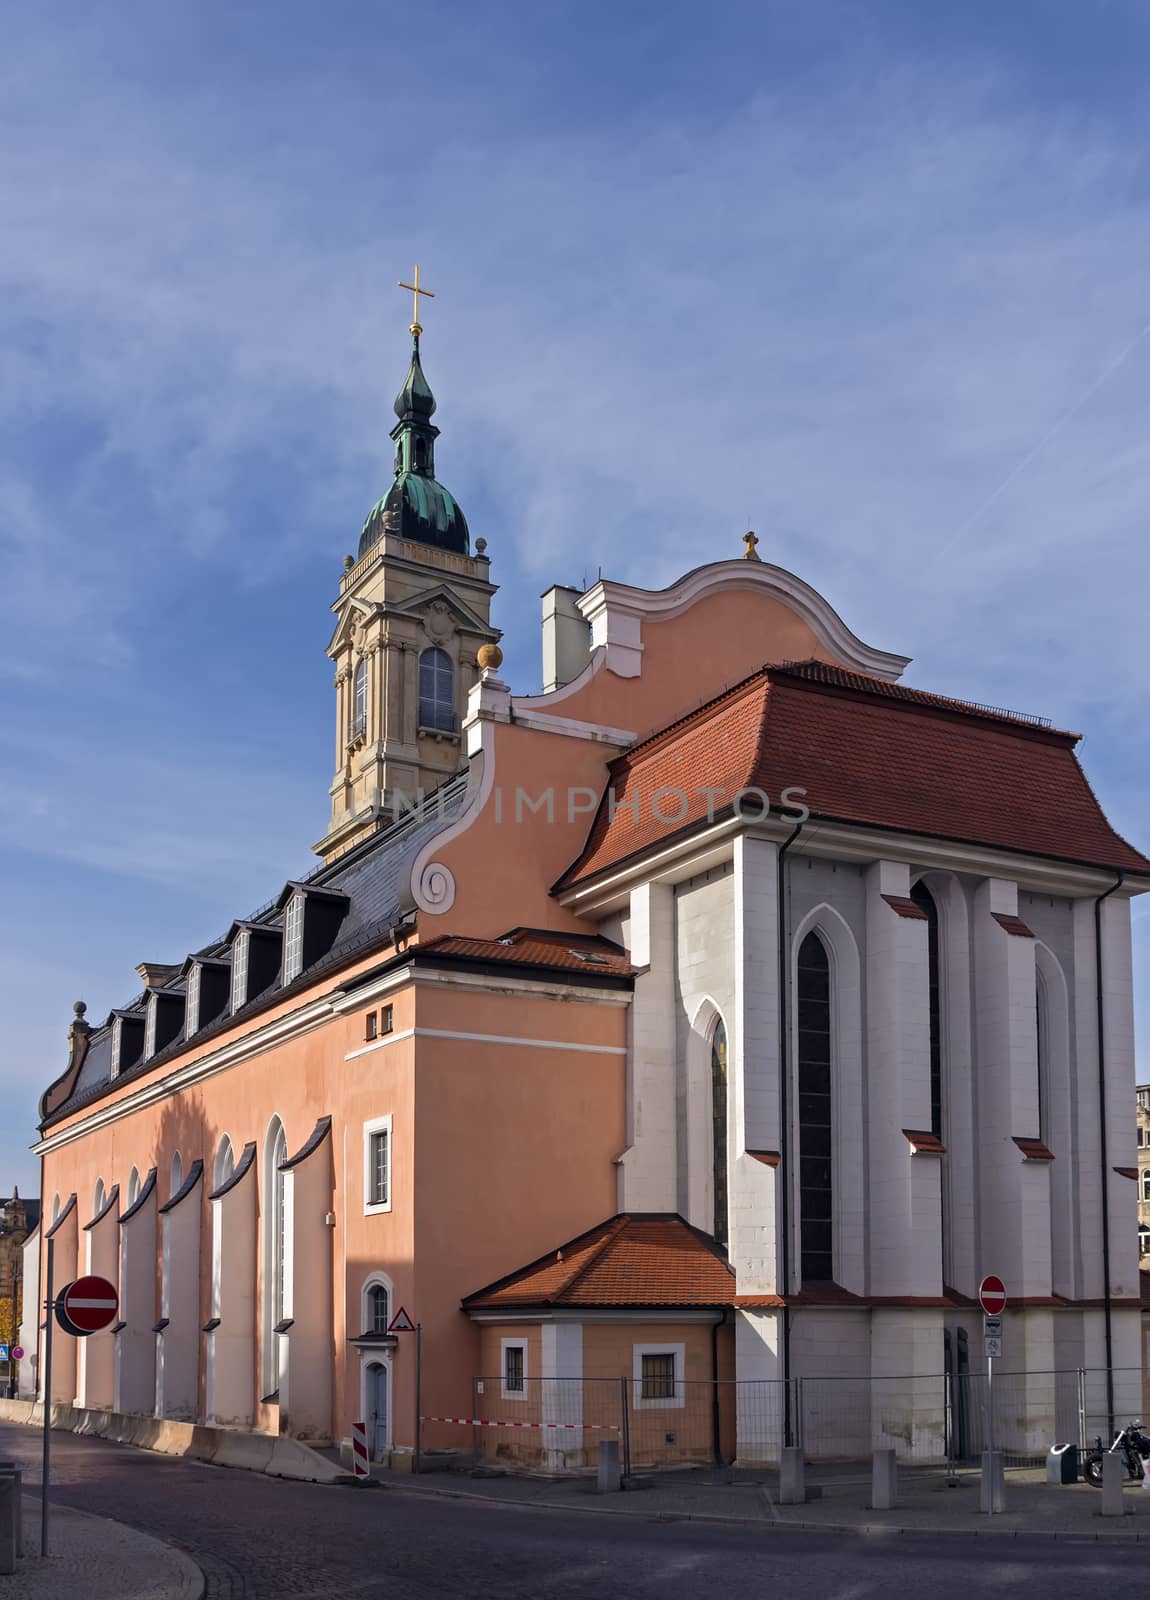 Church of St George, Eisenach, Germany by borisb17